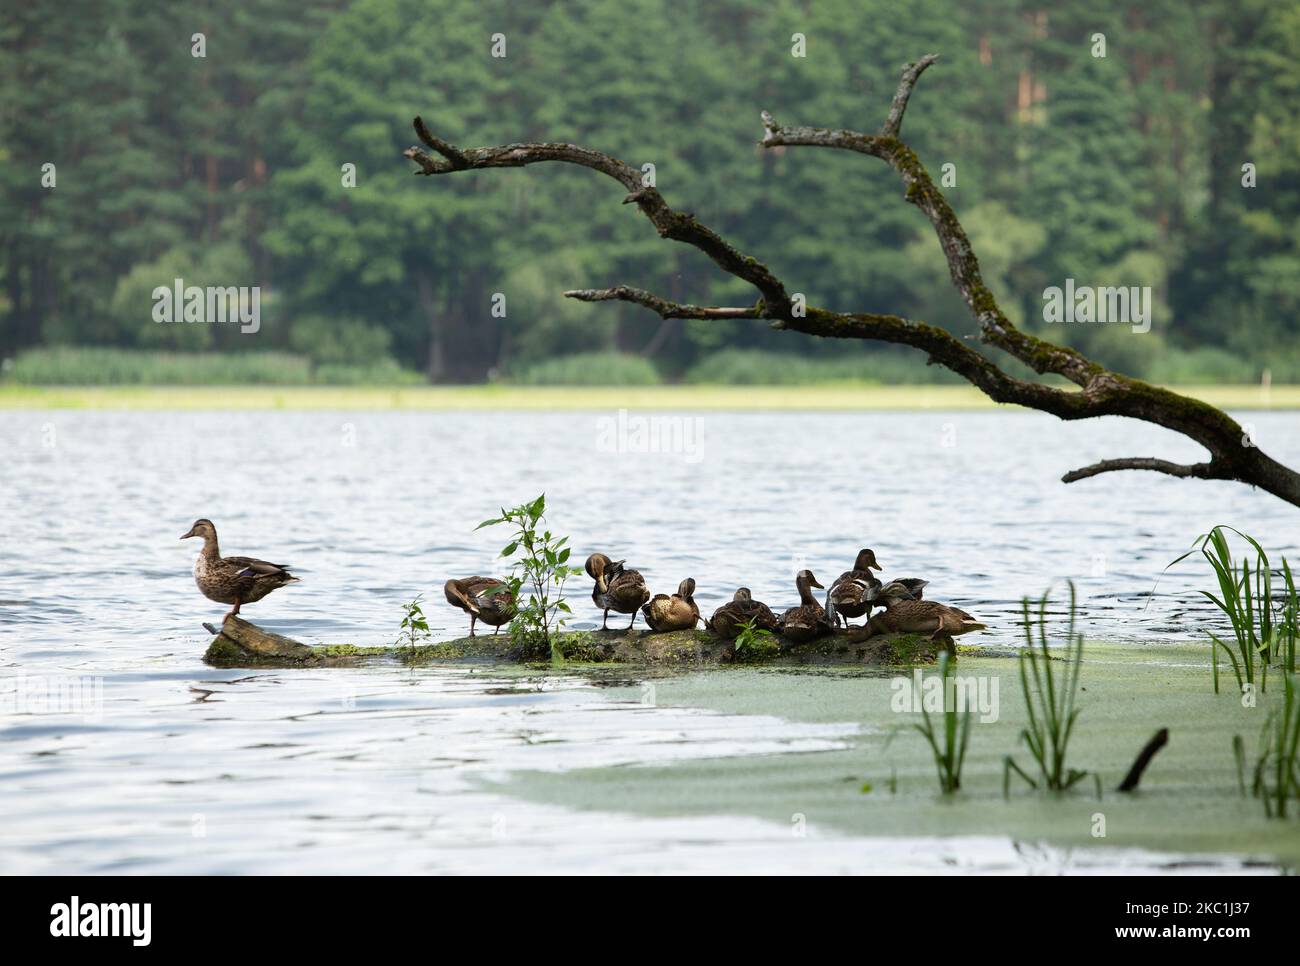 Eine Entenfamilie ruht auf einem Baumstamm, der mitten im See im Wasser liegt Stockfoto